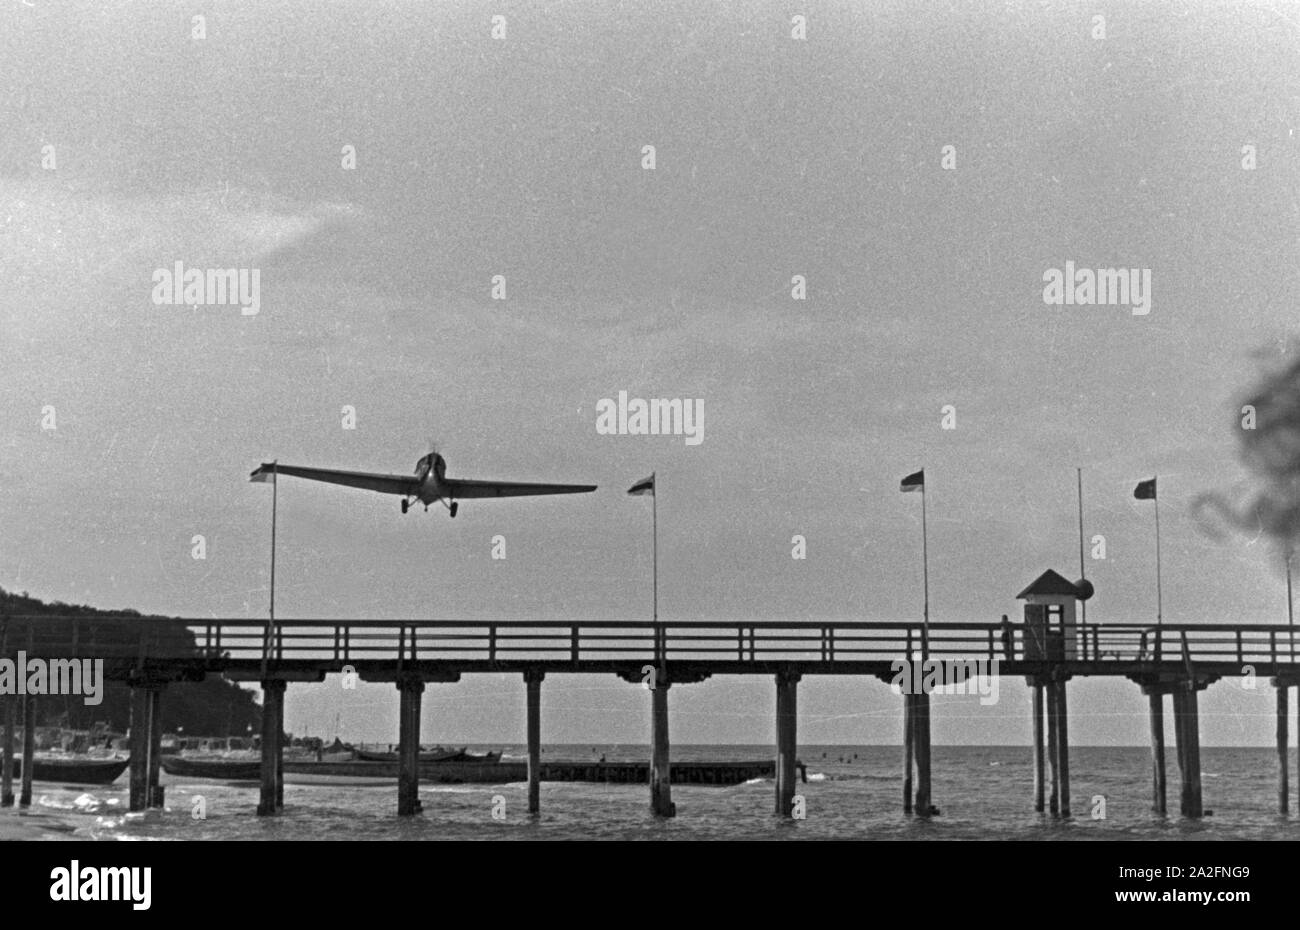 Ein Flugzeug im Tiefflug über einem Steg an der Ostsee, Deutschland 1930er Jahre. Ein Flugzeug auf einer niedrigen Ebene Flug über einen Pier an der Ostsee, Deutschland 1930. Stockfoto